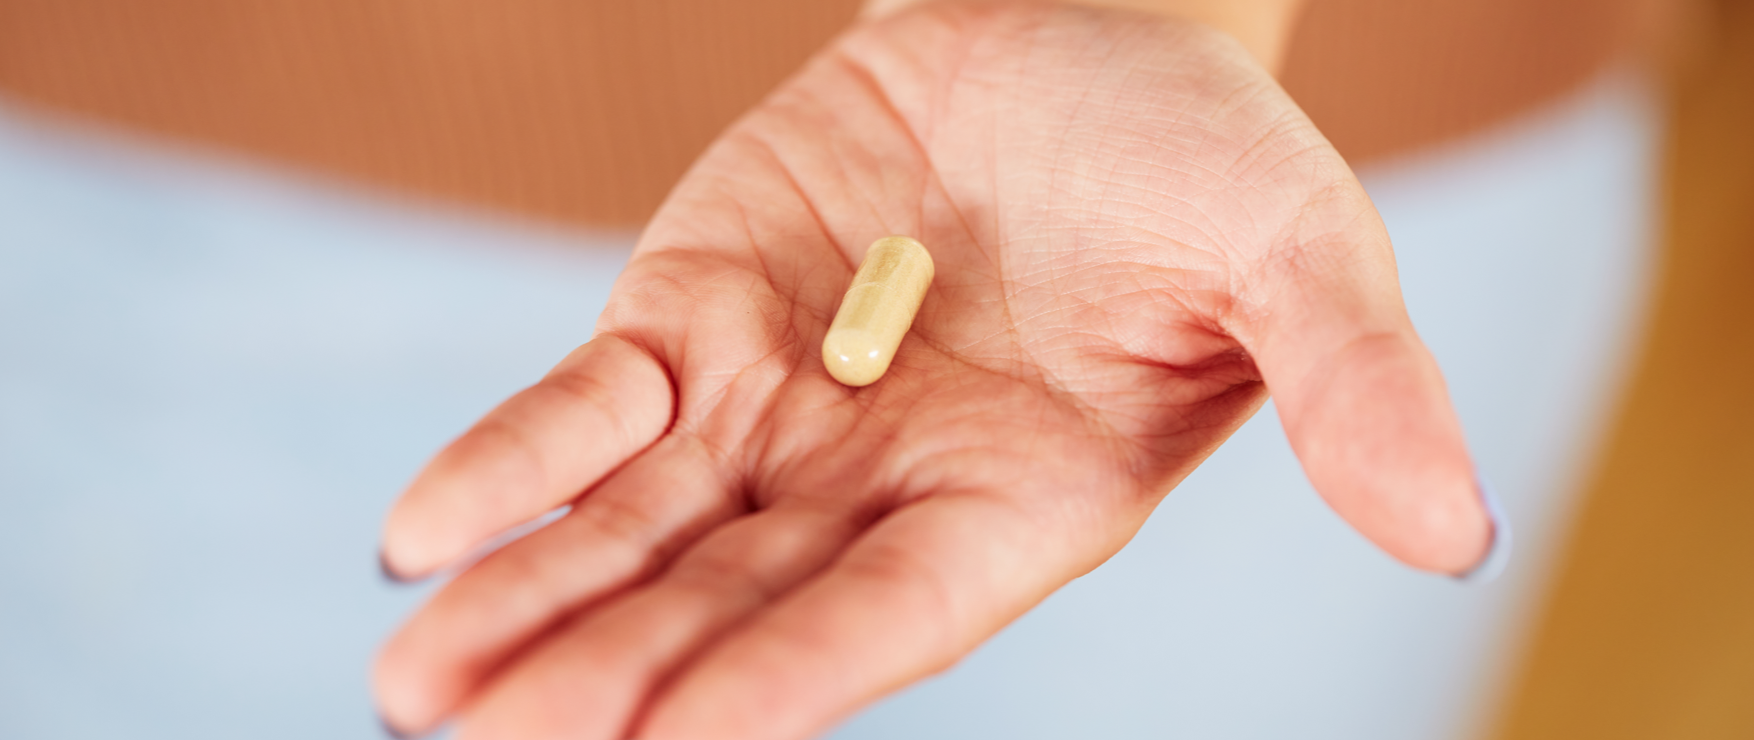 vitamin supplement FAQs header